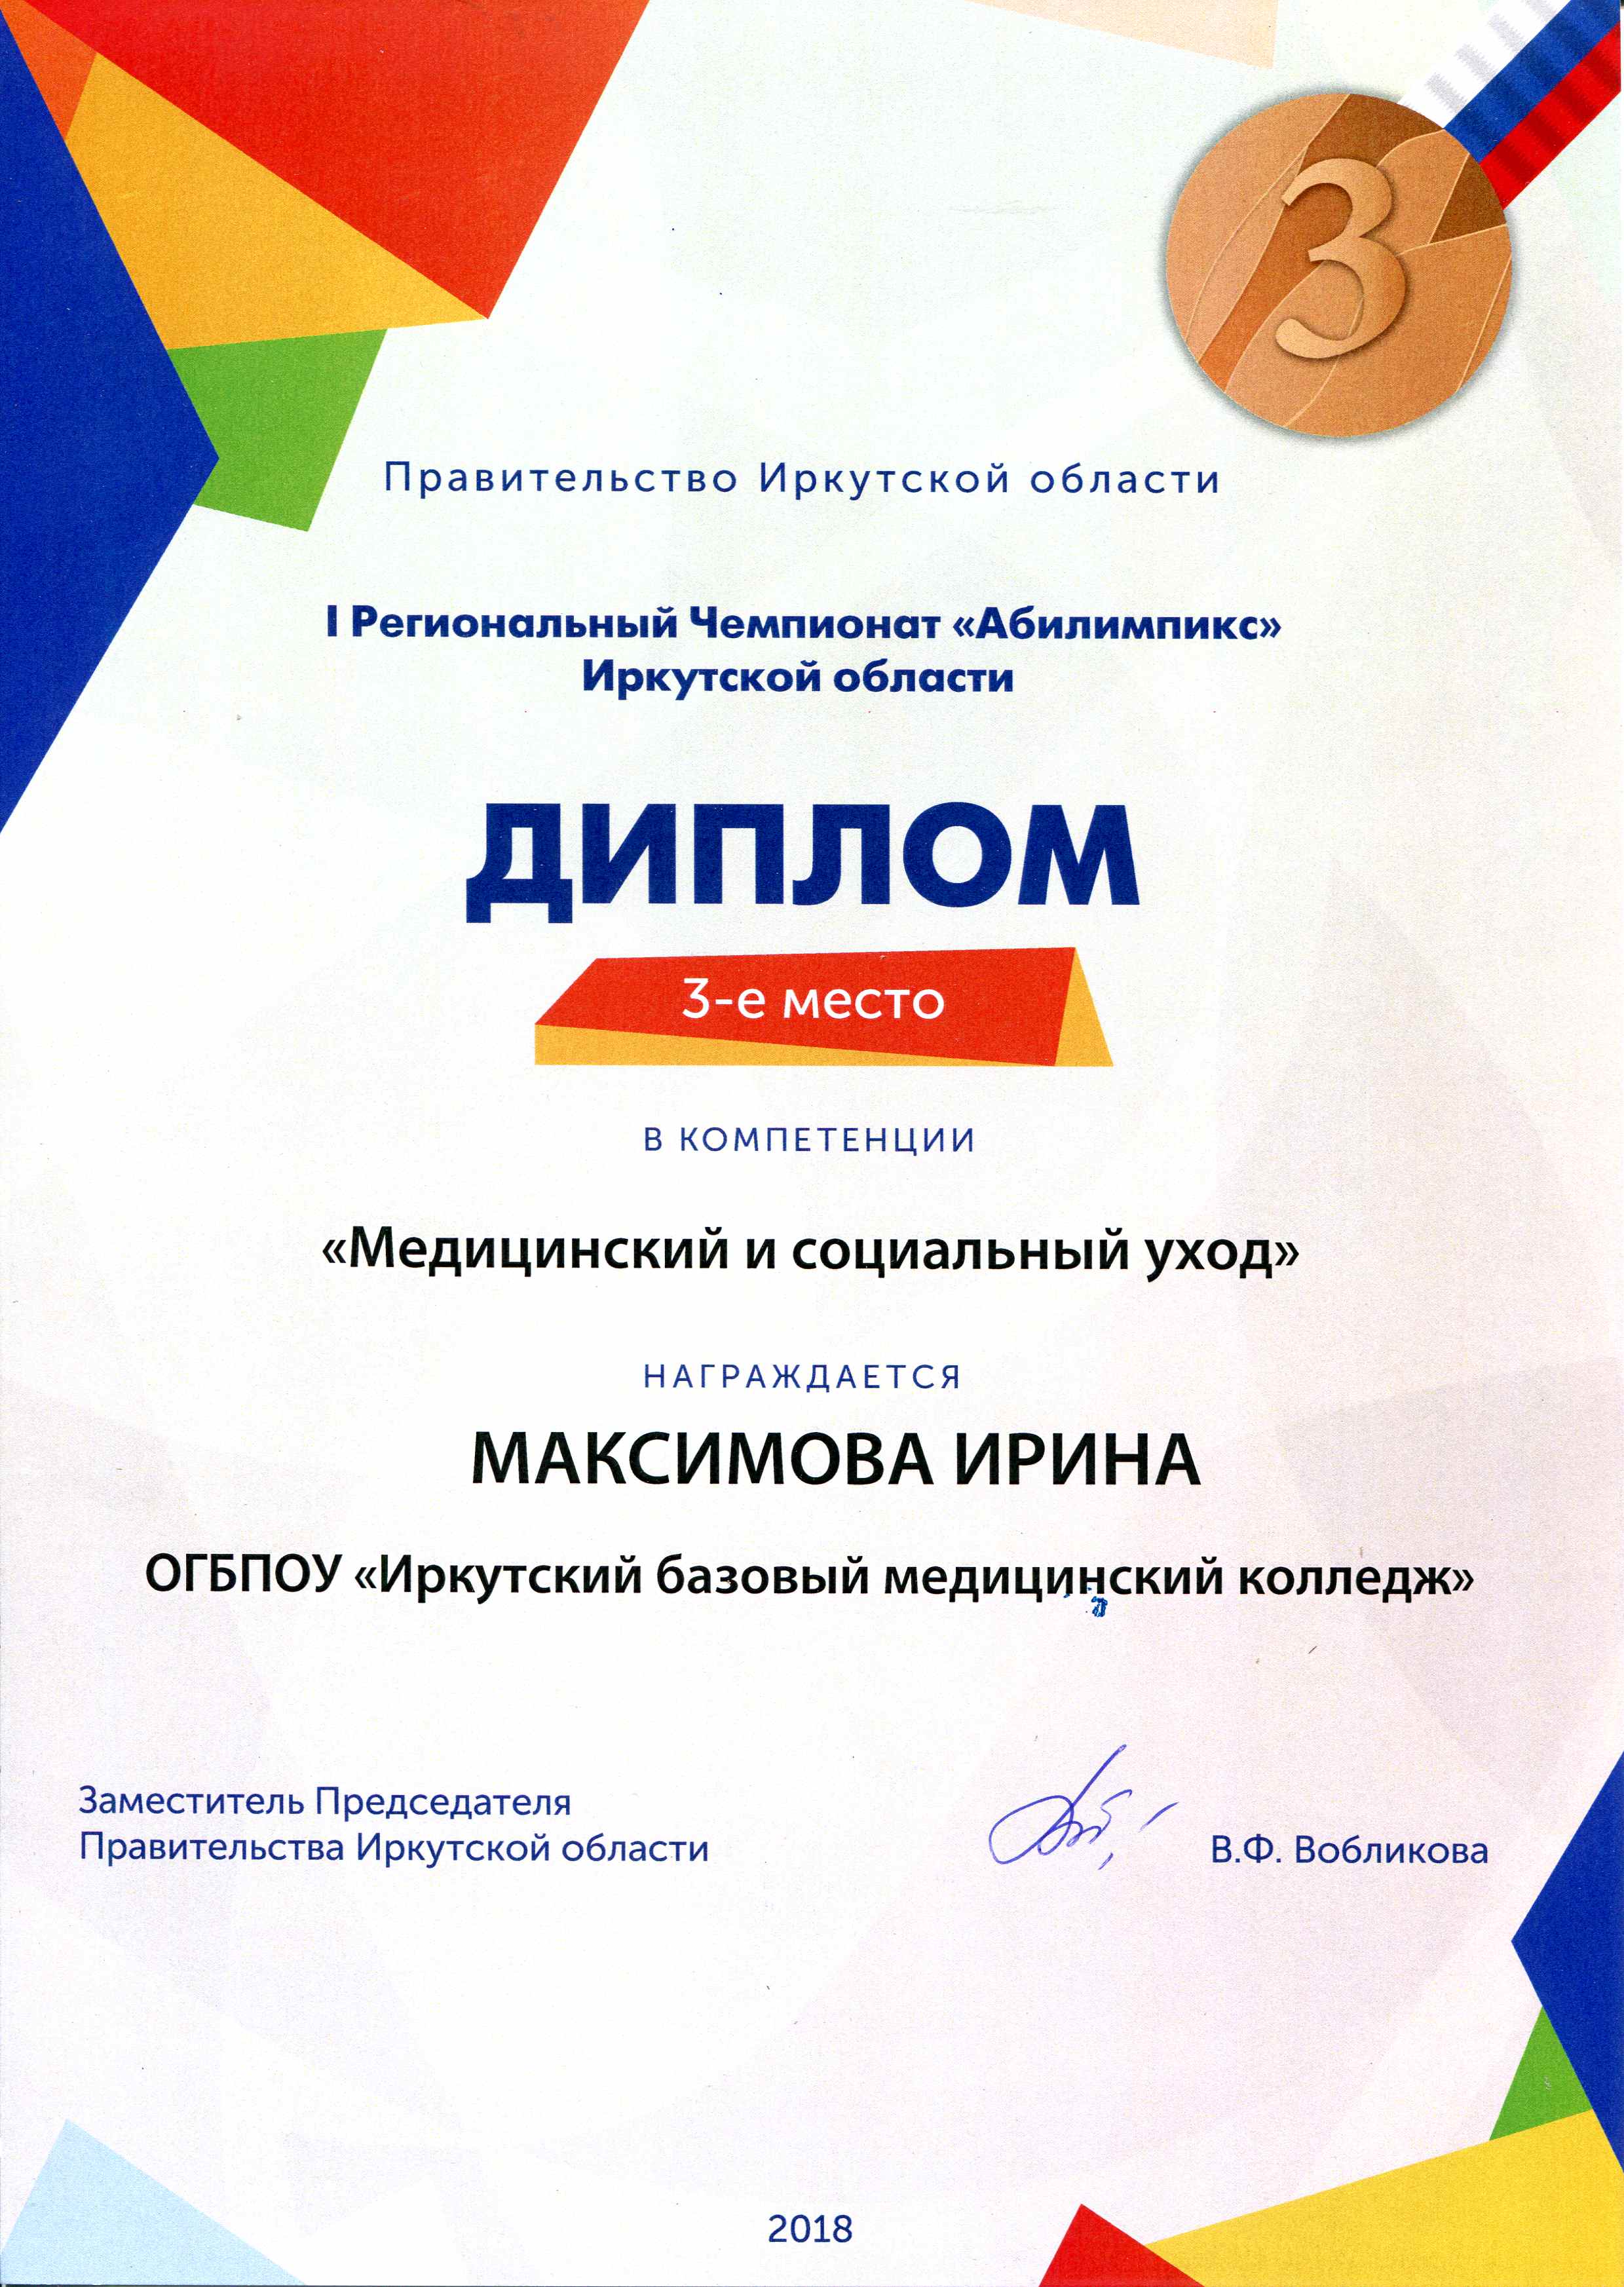 Поздравляем Максимову Ирину 04-1 сестринское дело с бронзовой медалью I Регионального чемпионата "Абилимпикс" 